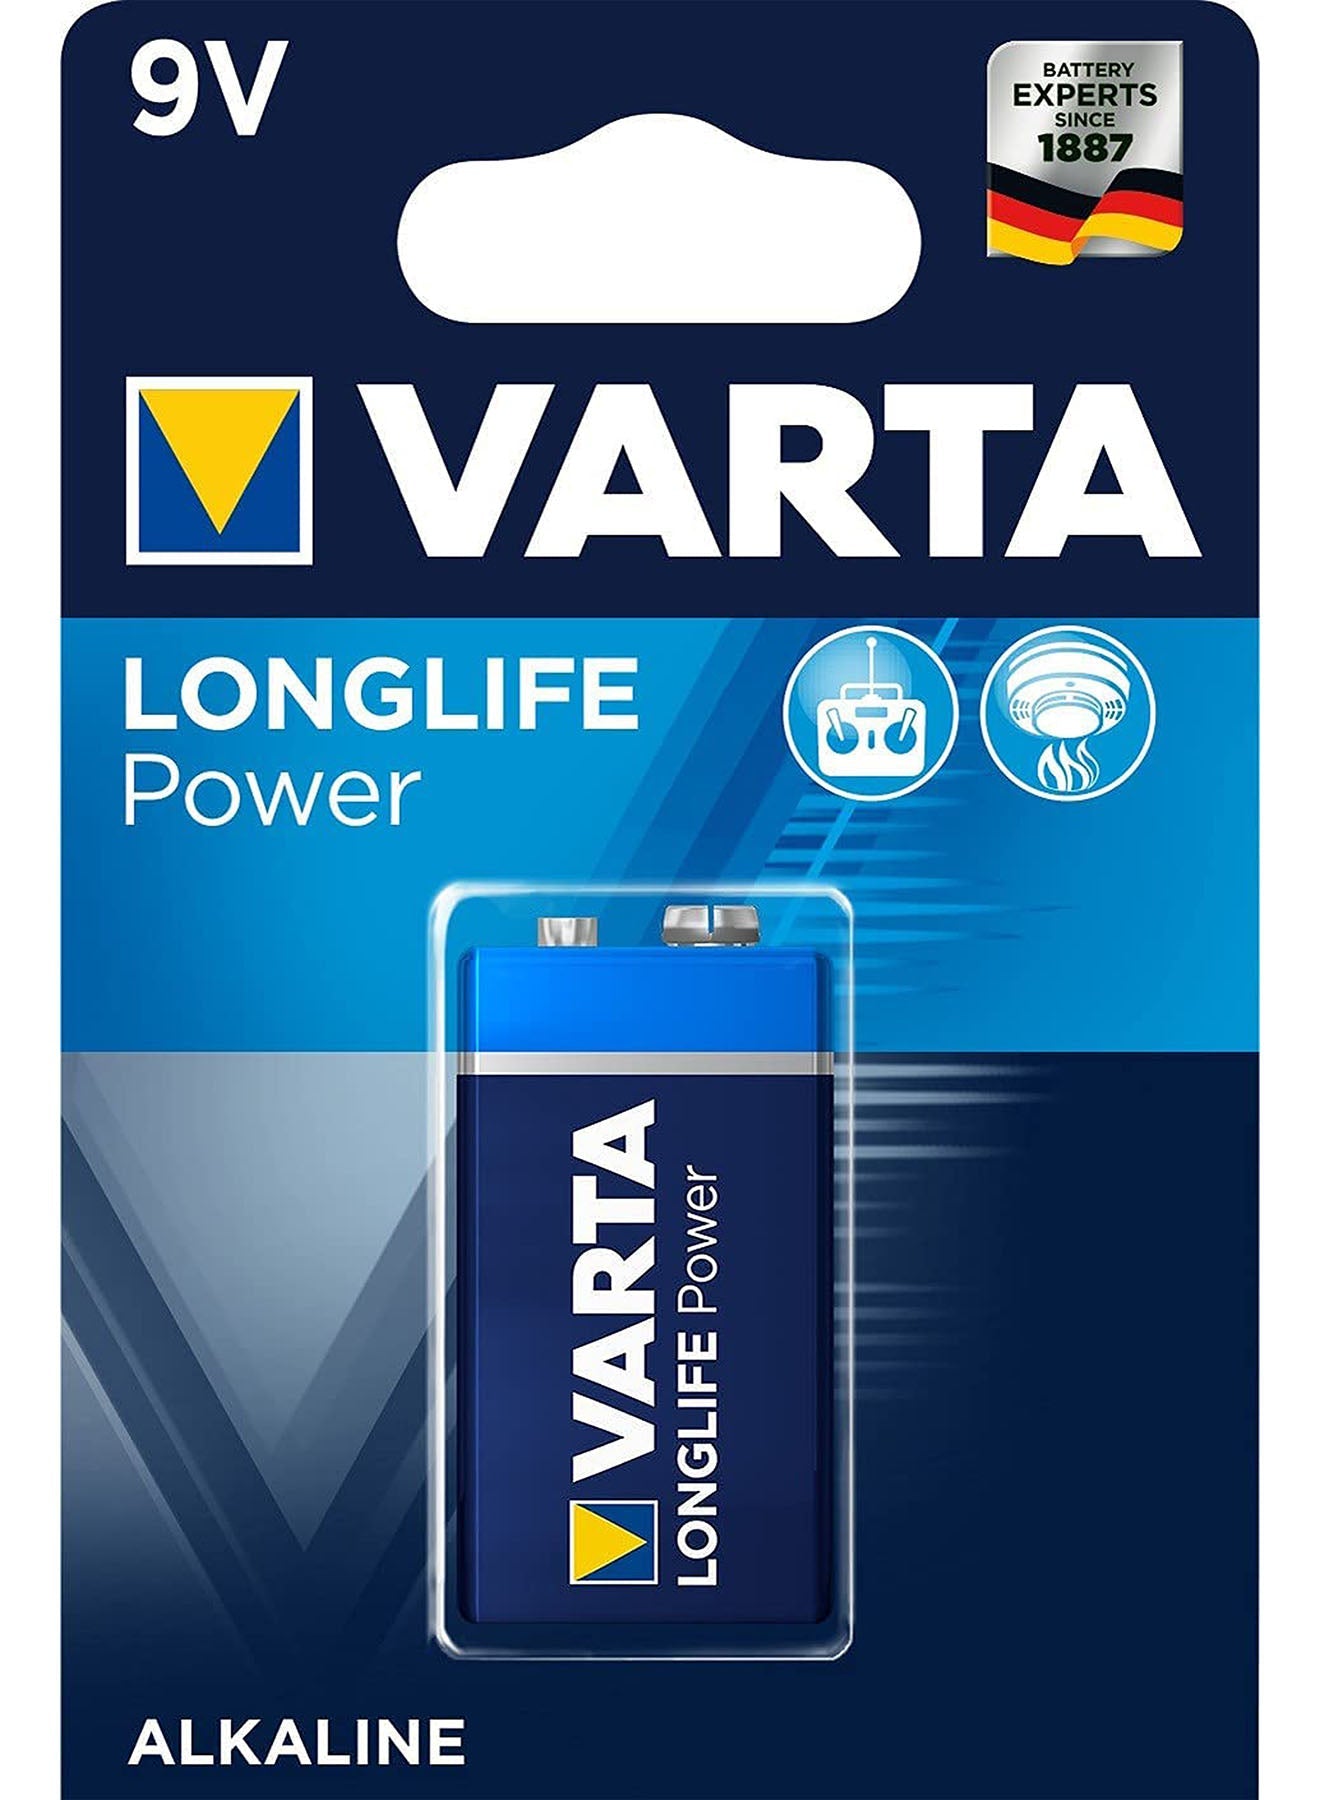 Varta Long Life Power 9V Block Alkaline Battery 1pack Value Pack of 3 